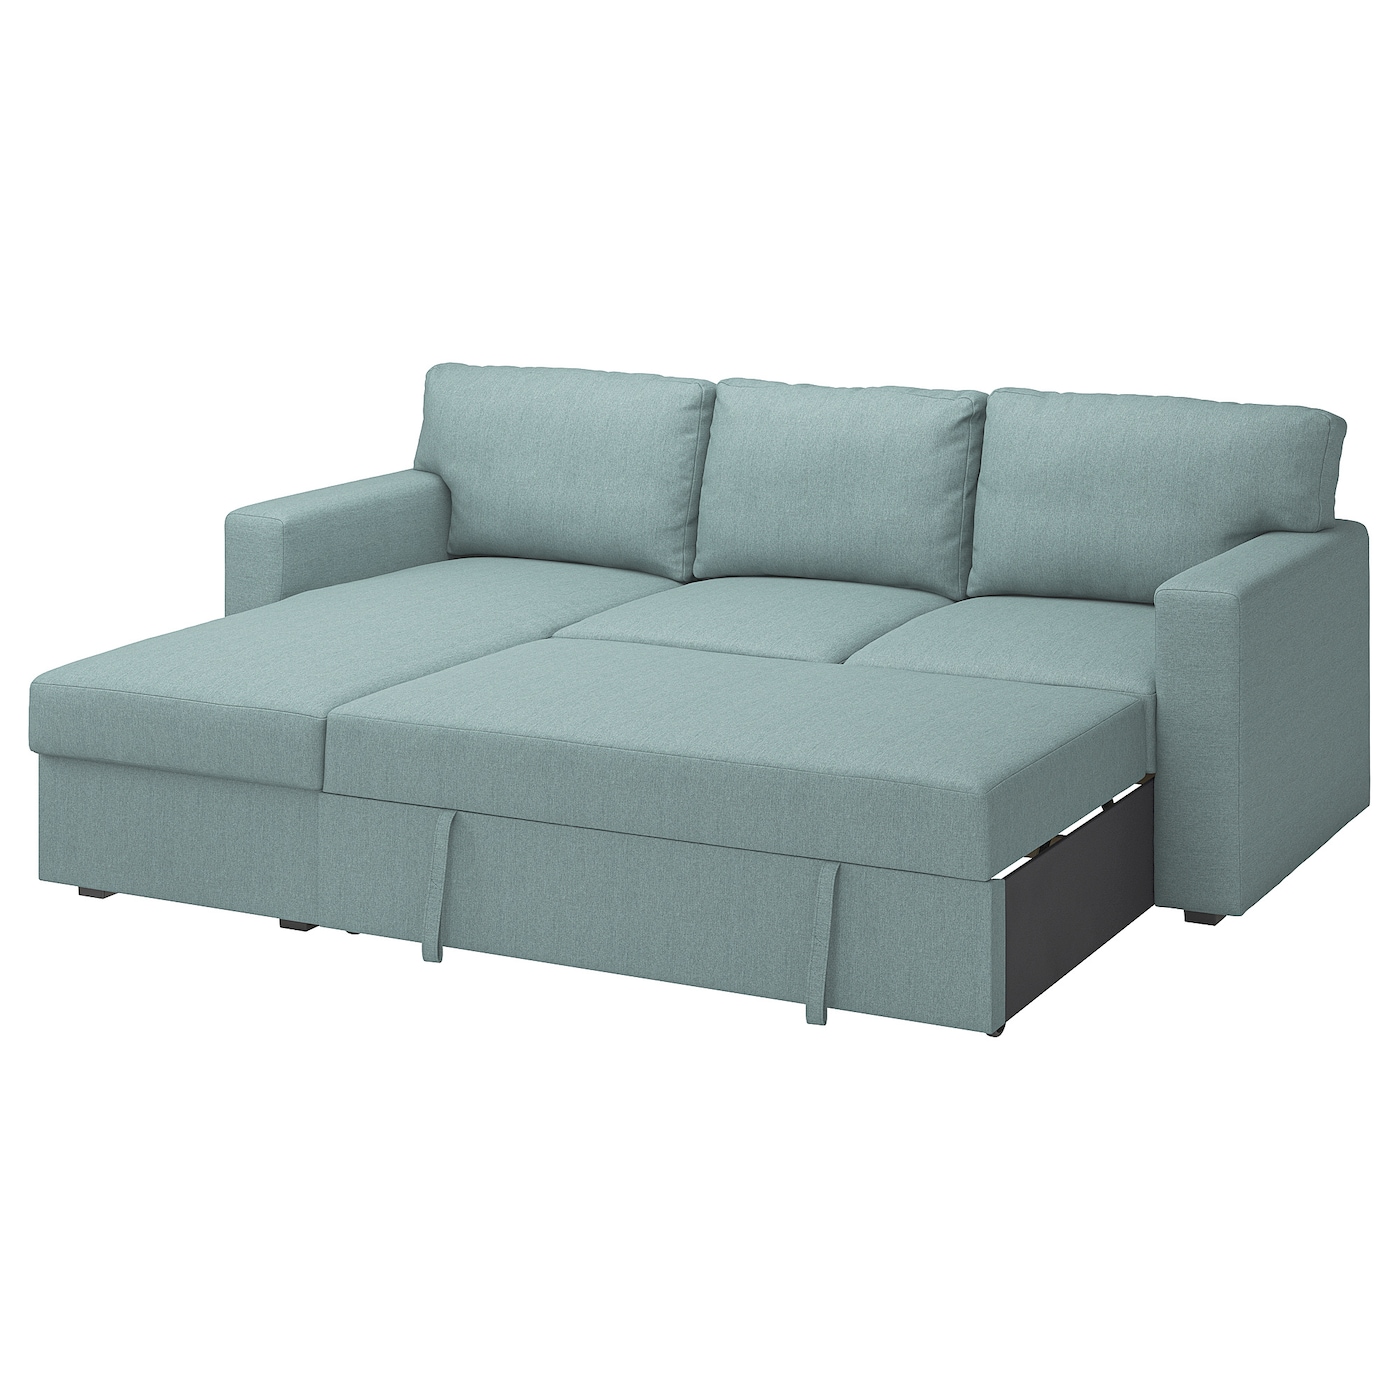 БОРСЛОВ 3-местный диван-кровать + диван, Тибблби светло-серый бирюзовый BÅRSLÖV IKEA новый европейский и американский надувной диван ihome ленивый диван кровать с подставкой для ног уличный складной портативный лежачий стул